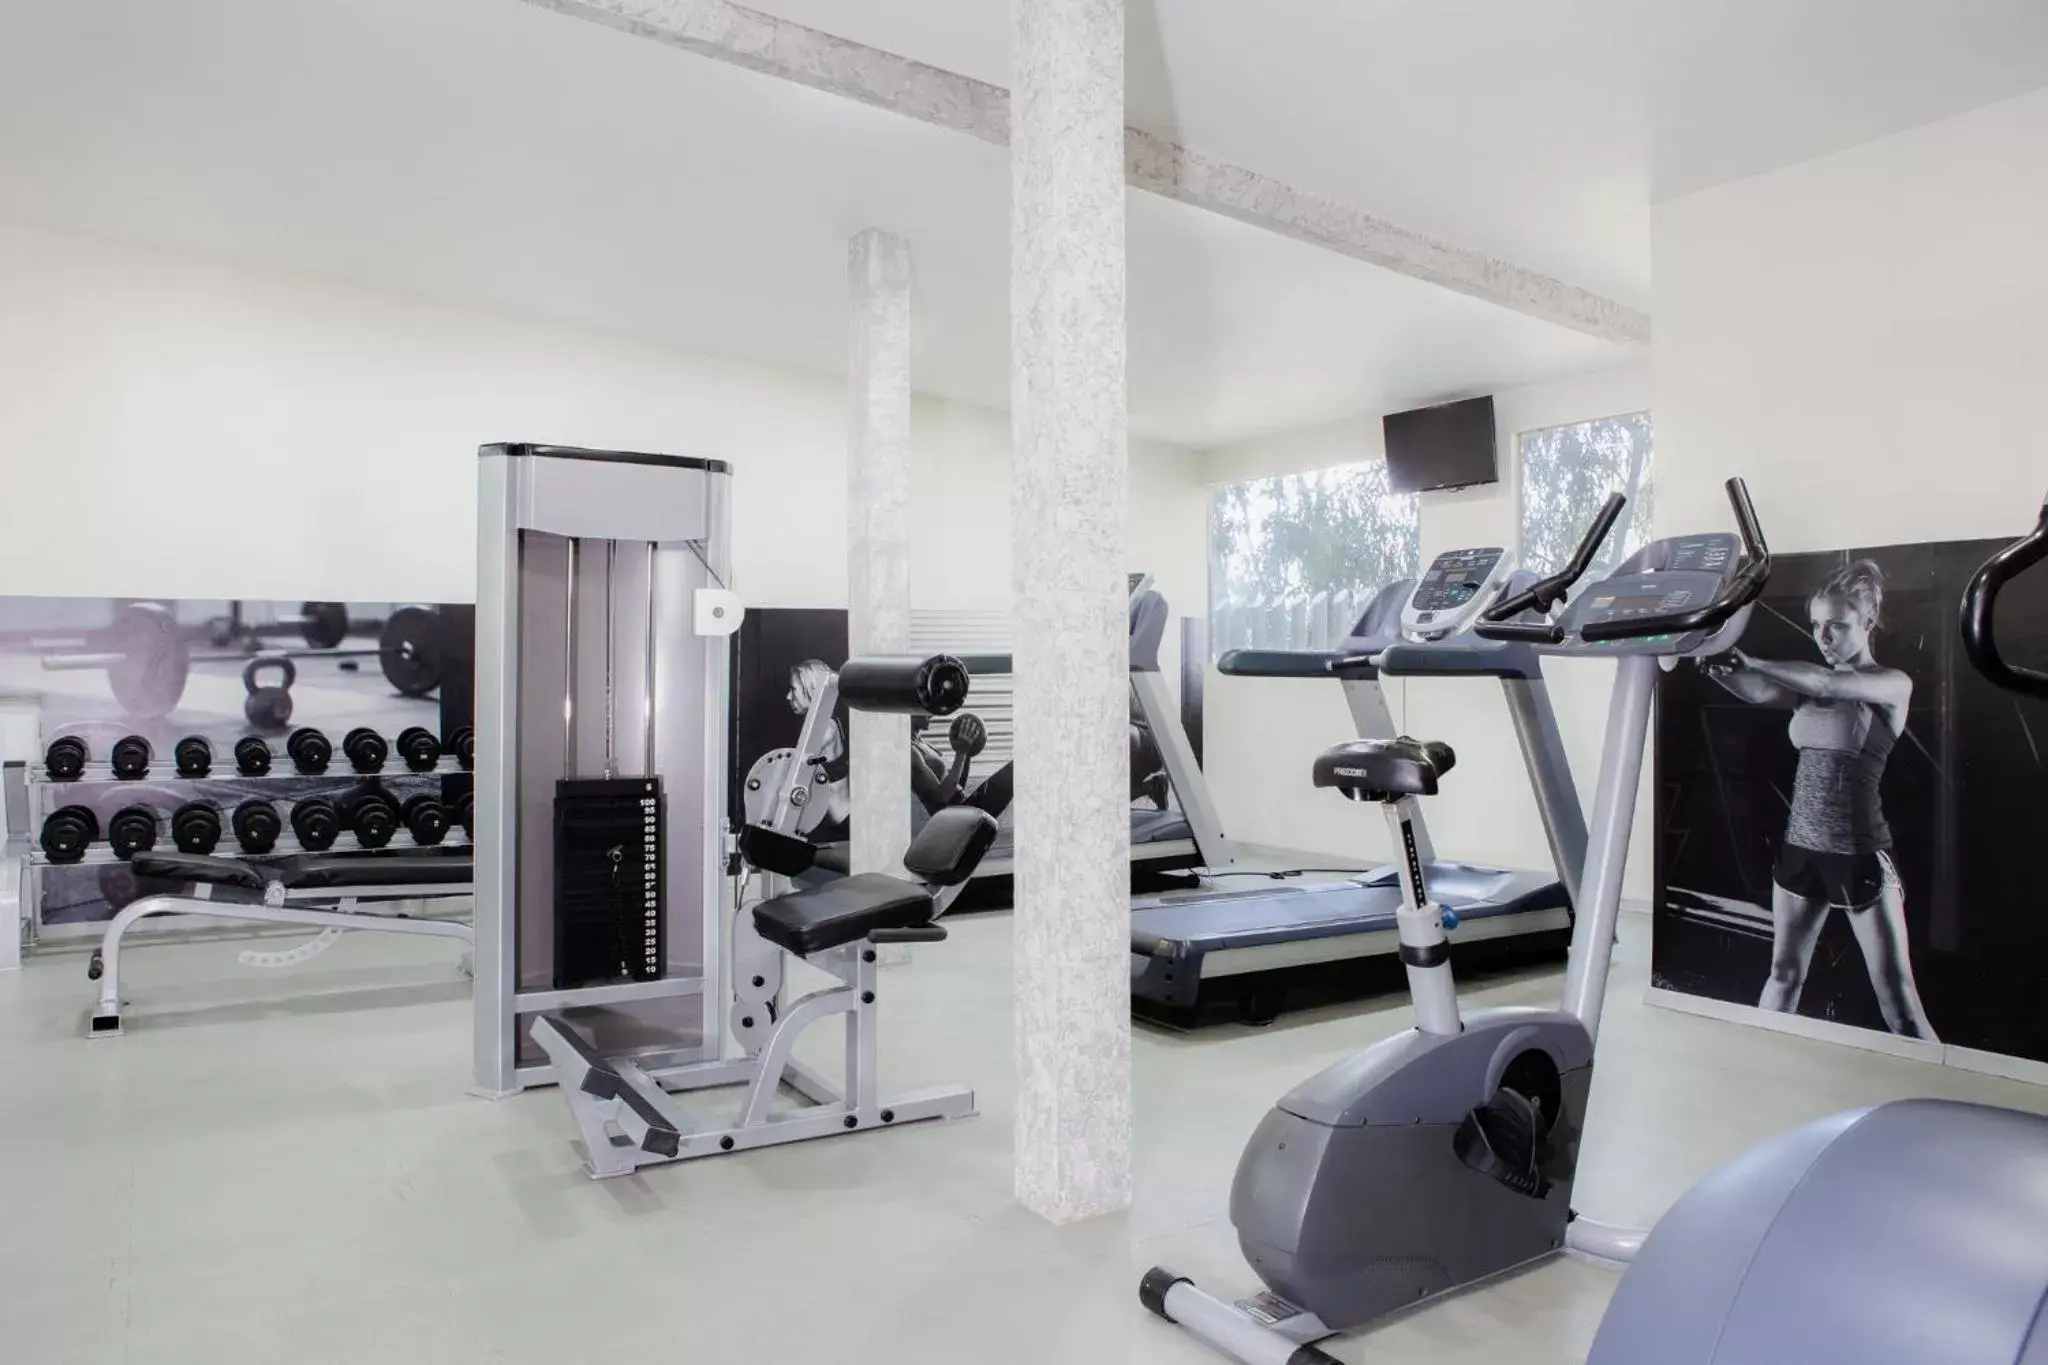 Fitness centre/facilities, Fitness Center/Facilities in Gamma Ciudad de Mexico Santa Fe